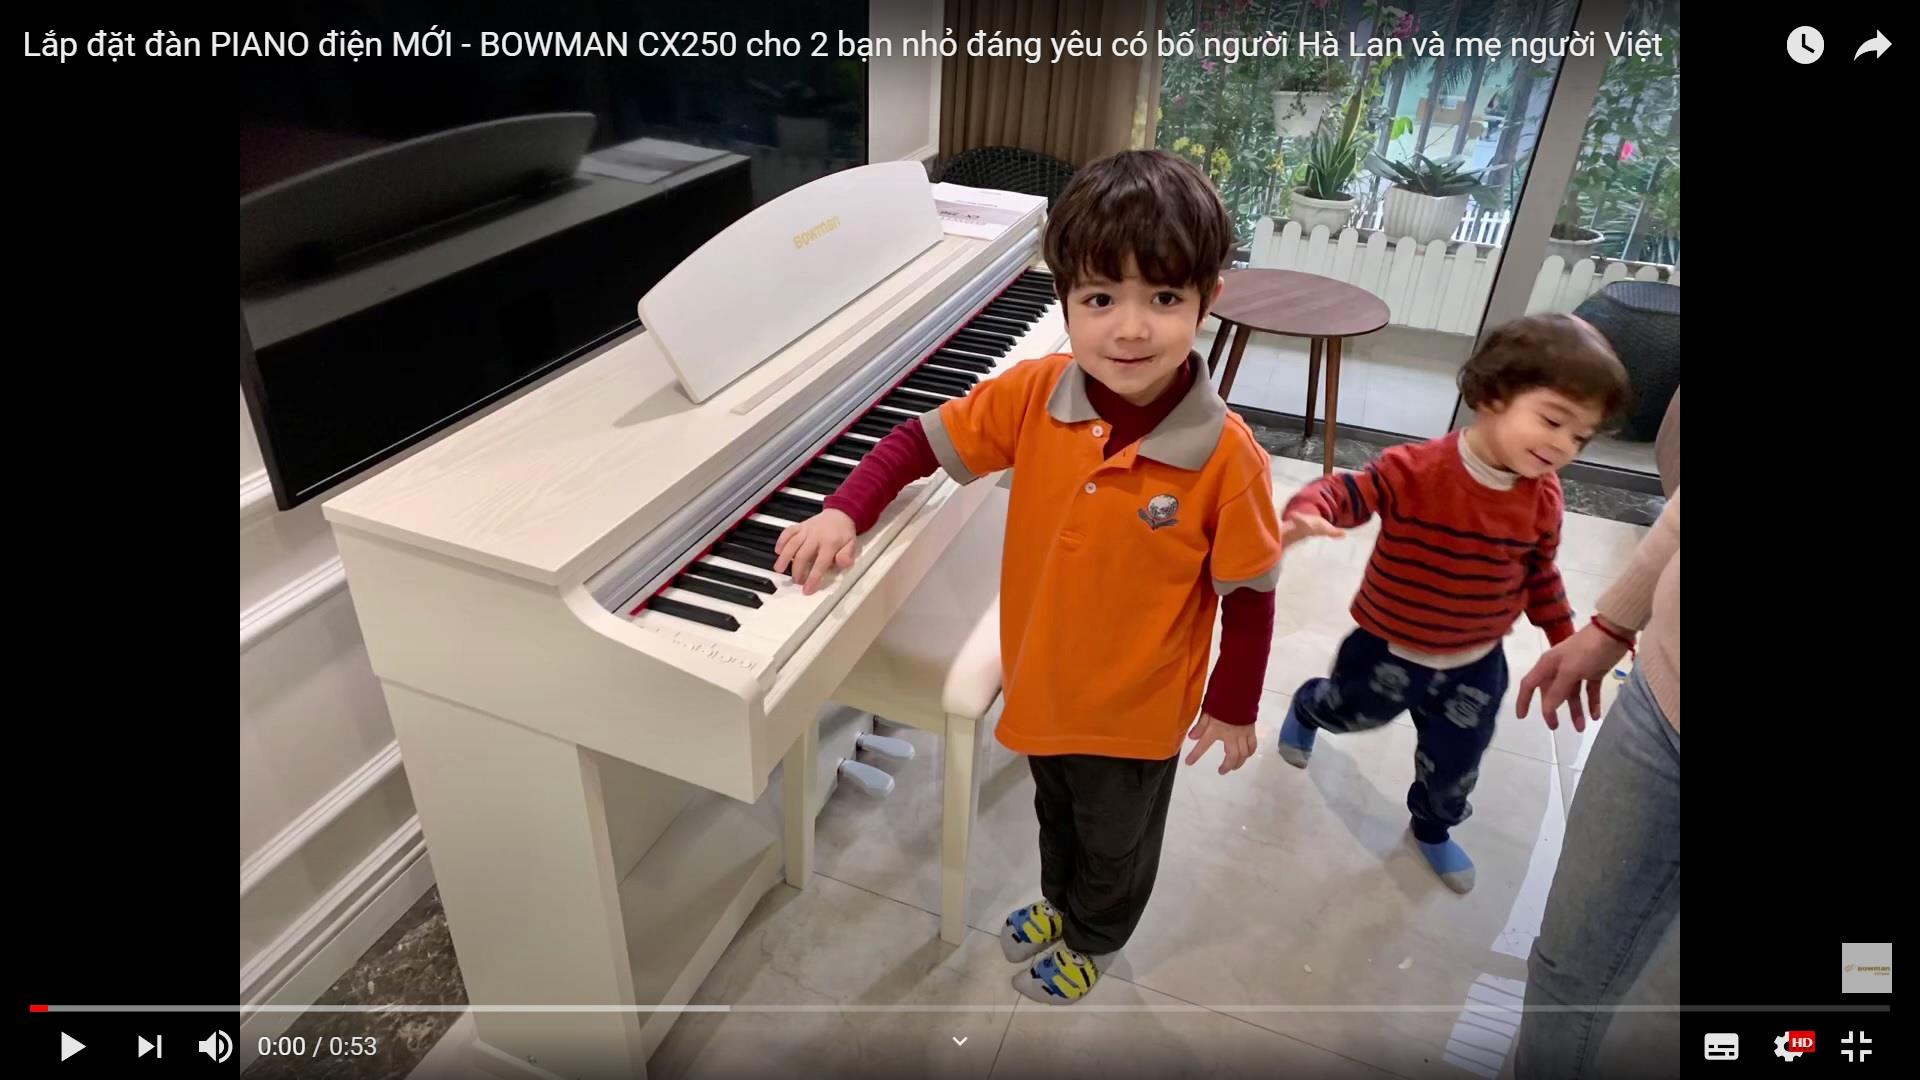 Lắp đặt đàn PIANO điện MỚI - BOWMAN CX250 cho 2 bạn nhỏ đáng yêu có bố người Hà Lan và mẹ người Việt